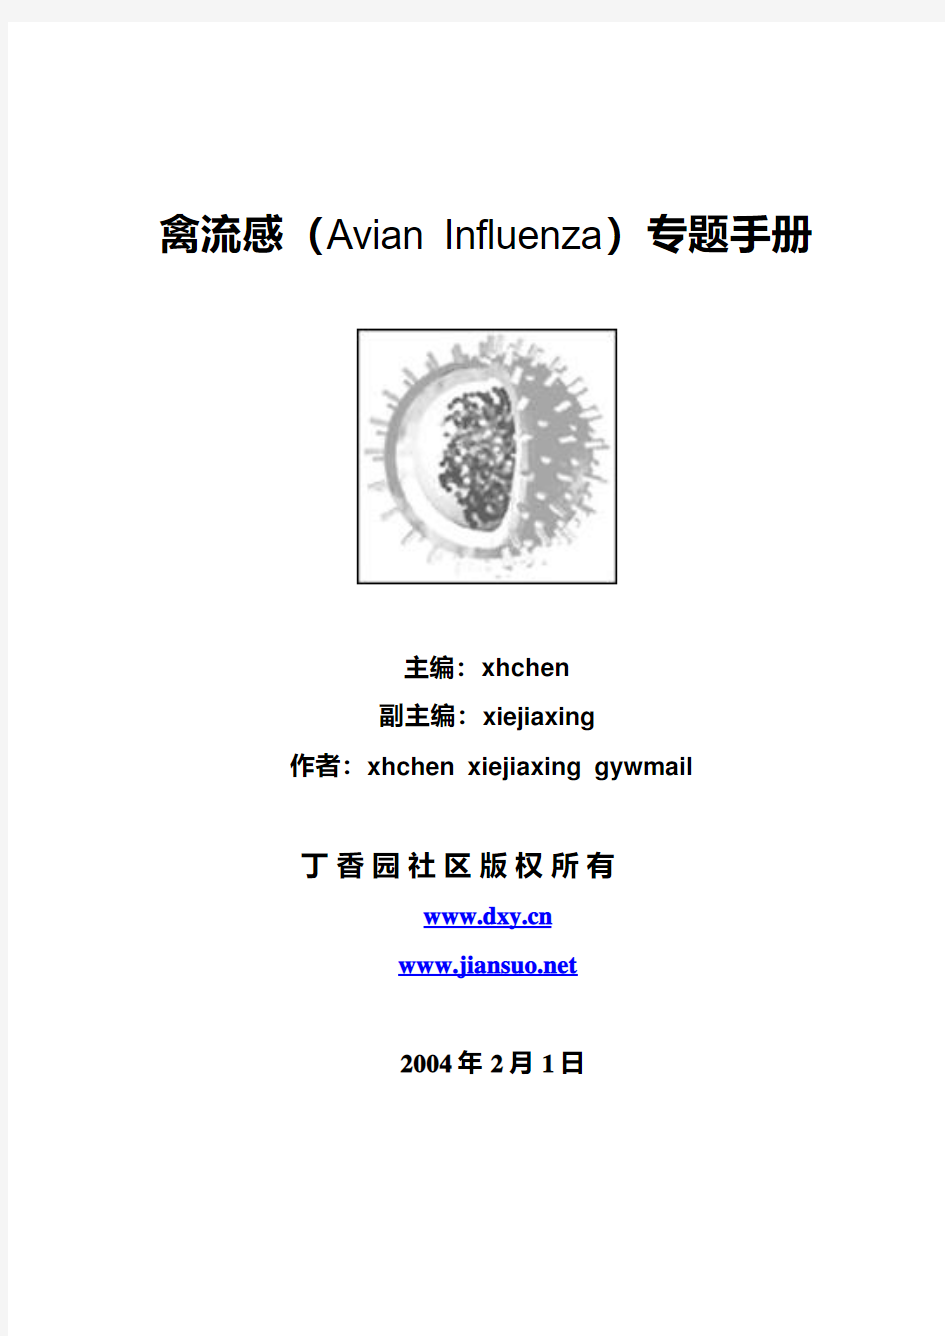 禽流感(Avian Influenza)专题手册